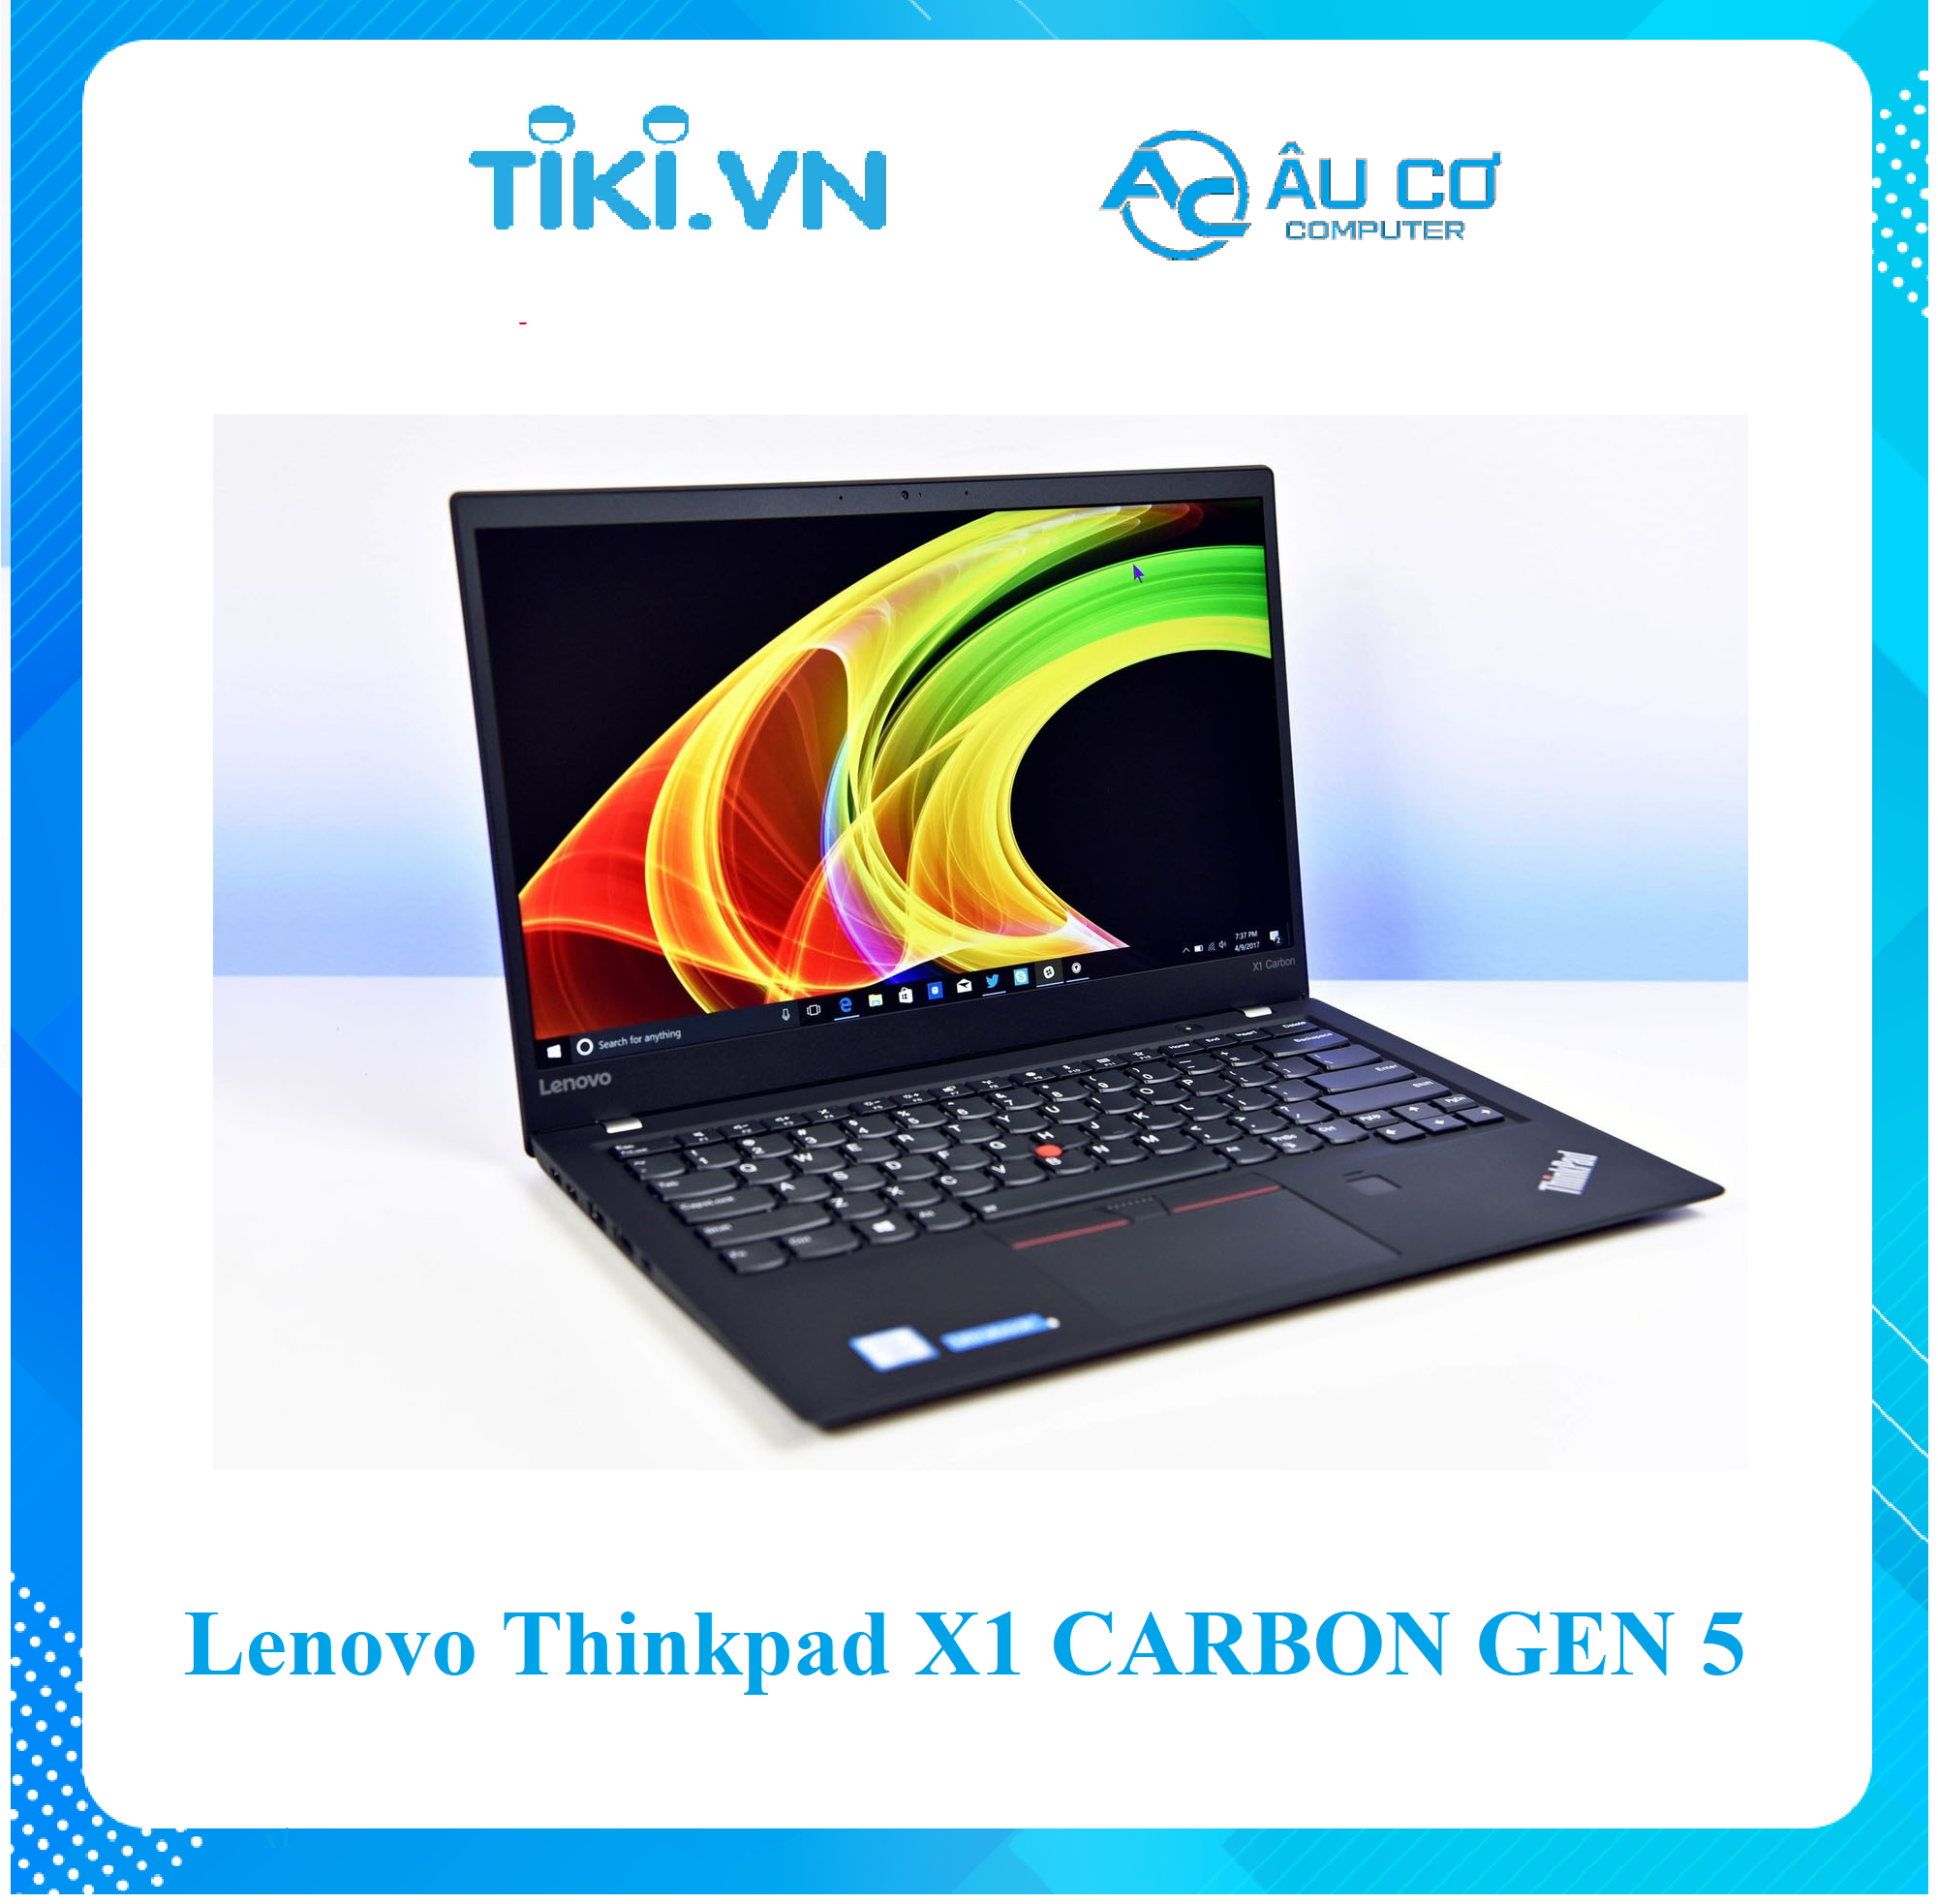 Lenovo ThinkPad X1 Carbon Gen 5 Core i7-7600U RAM 16GB SSD 512GB 14 inch FHD Windows 10 Pro - Hàng Chính Hãng